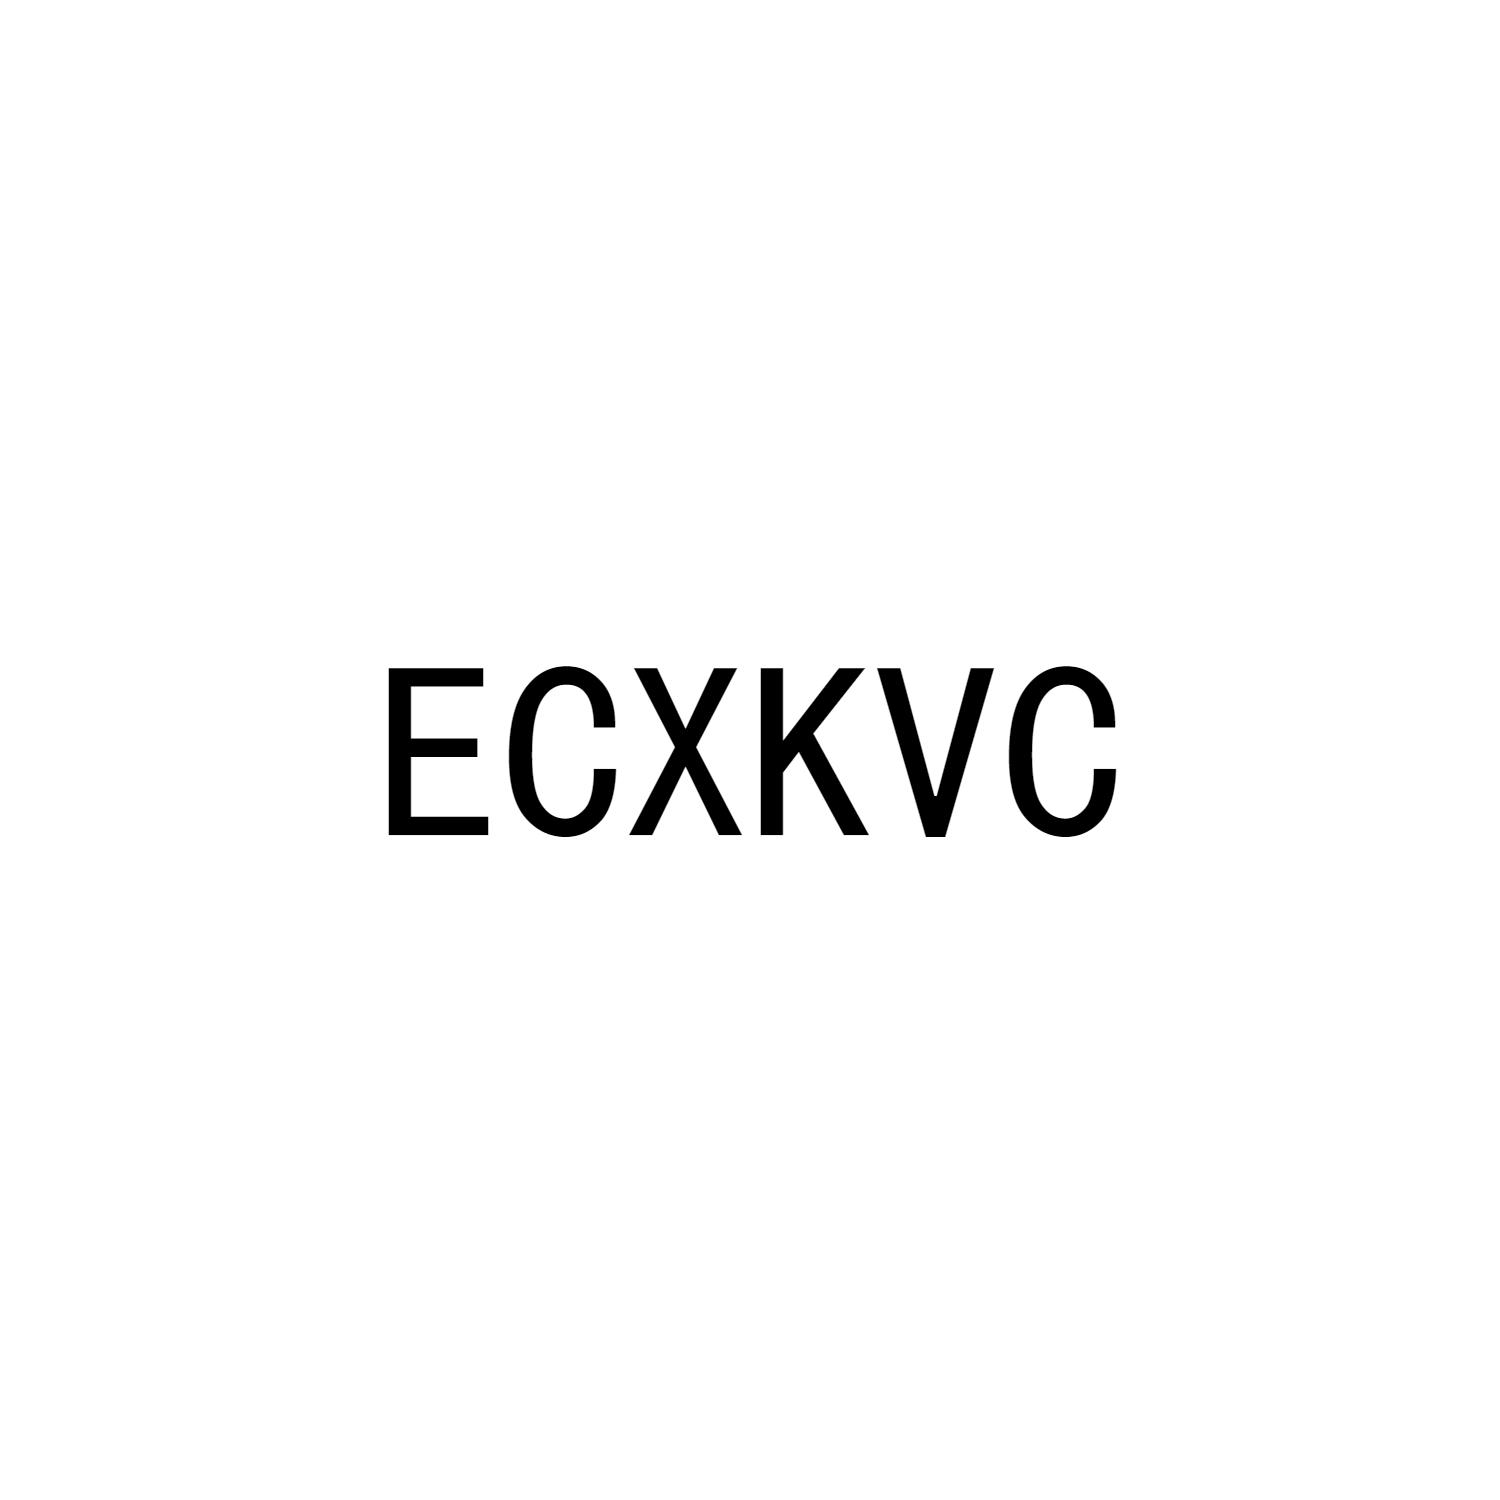 ECXKVC